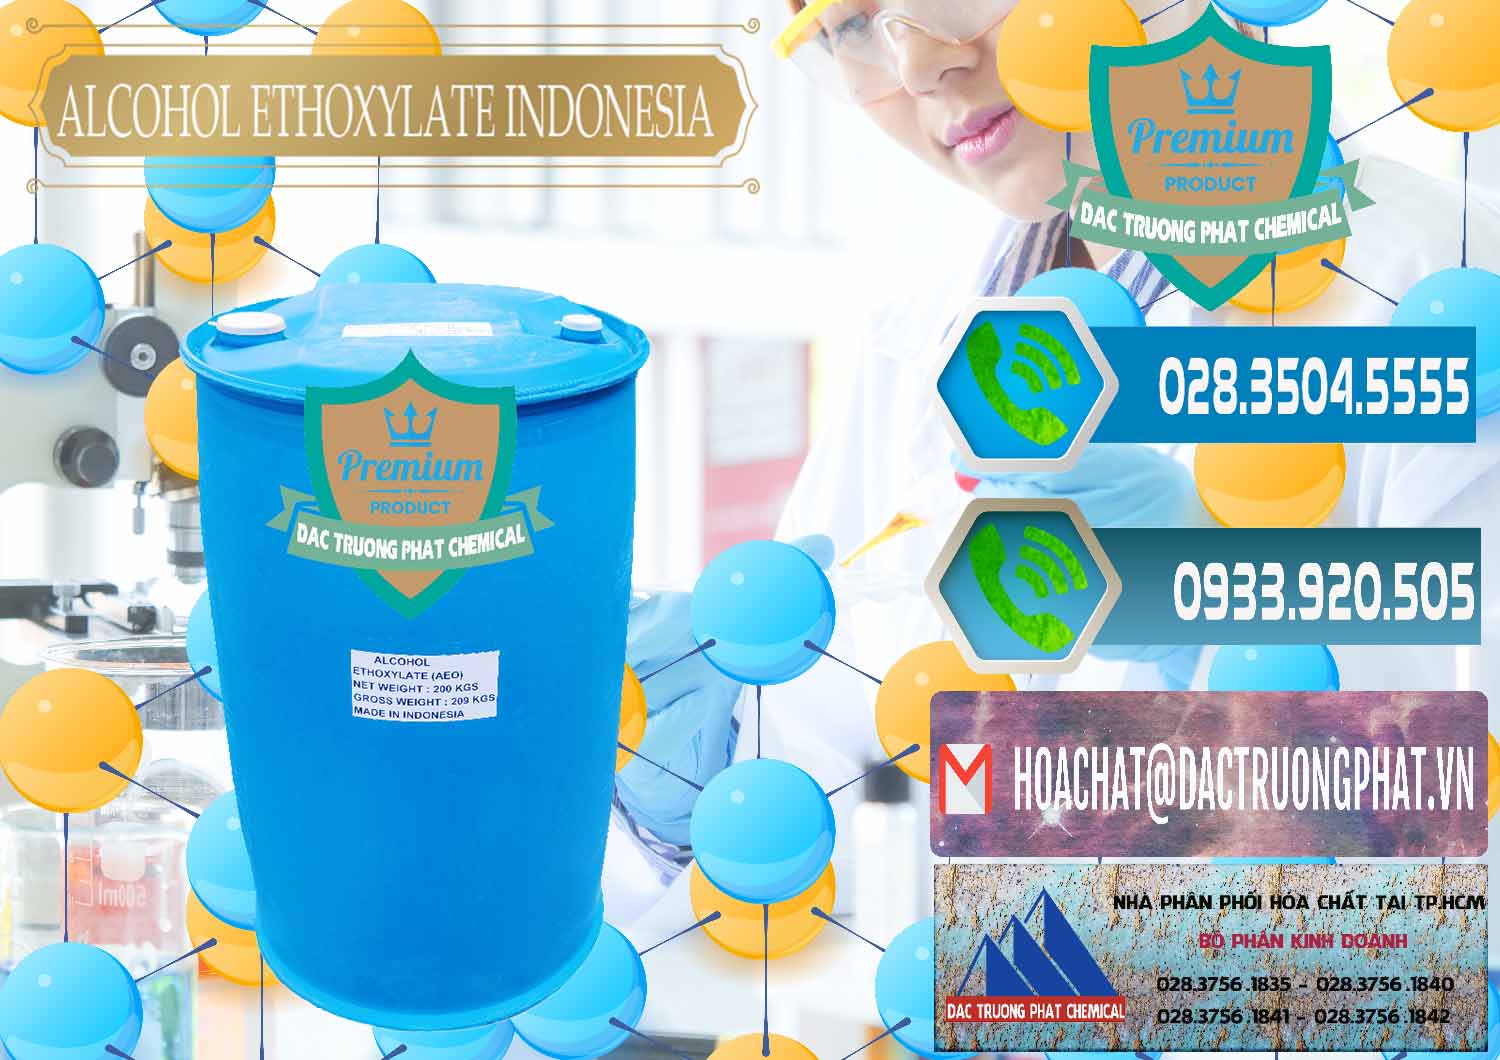 Nơi bán _ cung cấp Alcohol Ethoxylate Indonesia - 0308 - Nơi chuyên cung ứng _ phân phối hóa chất tại TP.HCM - congtyhoachat.net